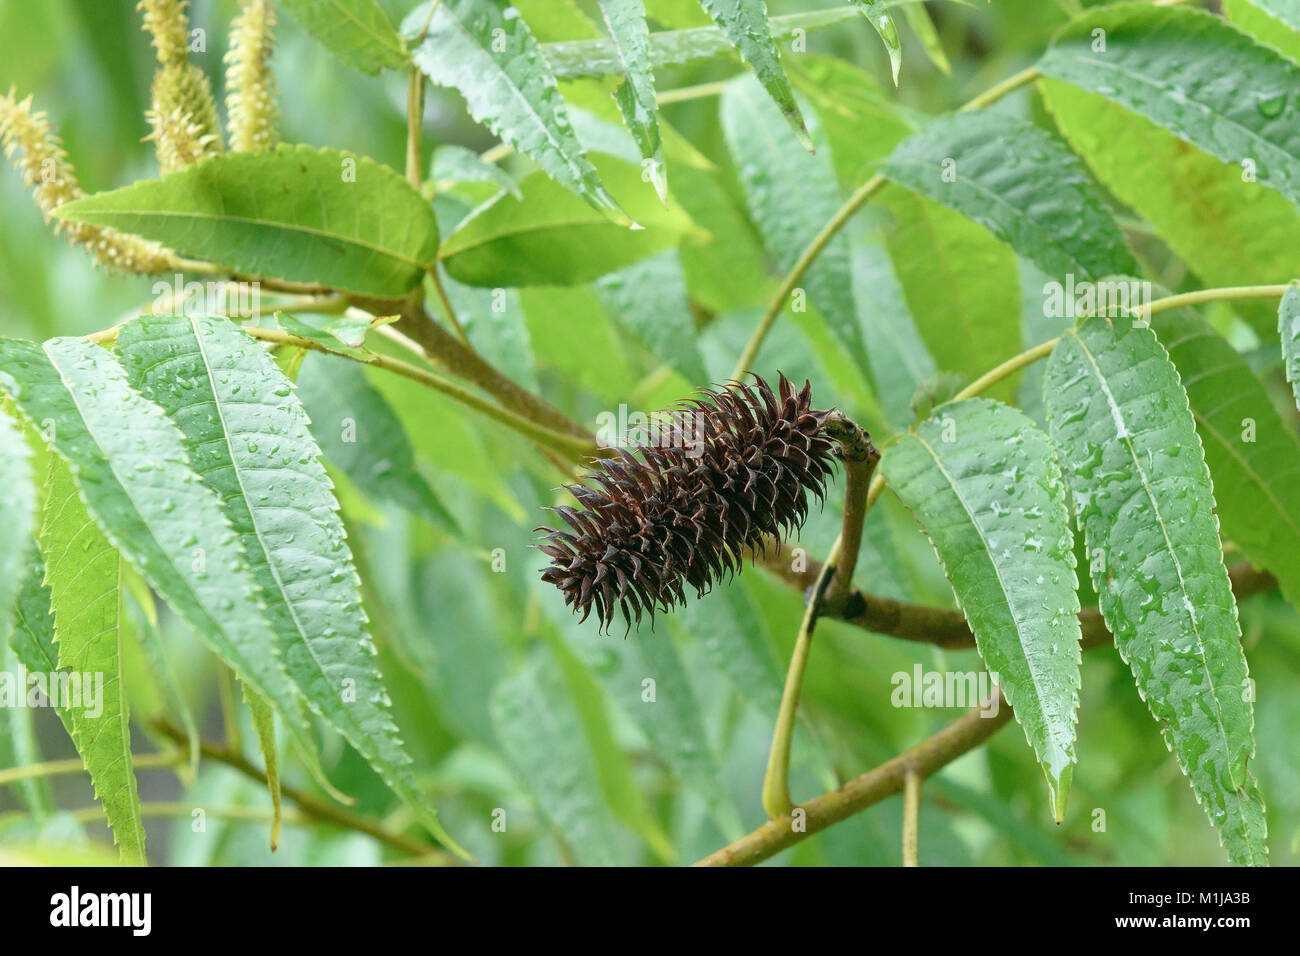 Pin nut (carya strobilacea platy), Zapfennuss (Platycarya strobilacea) Stock Photo